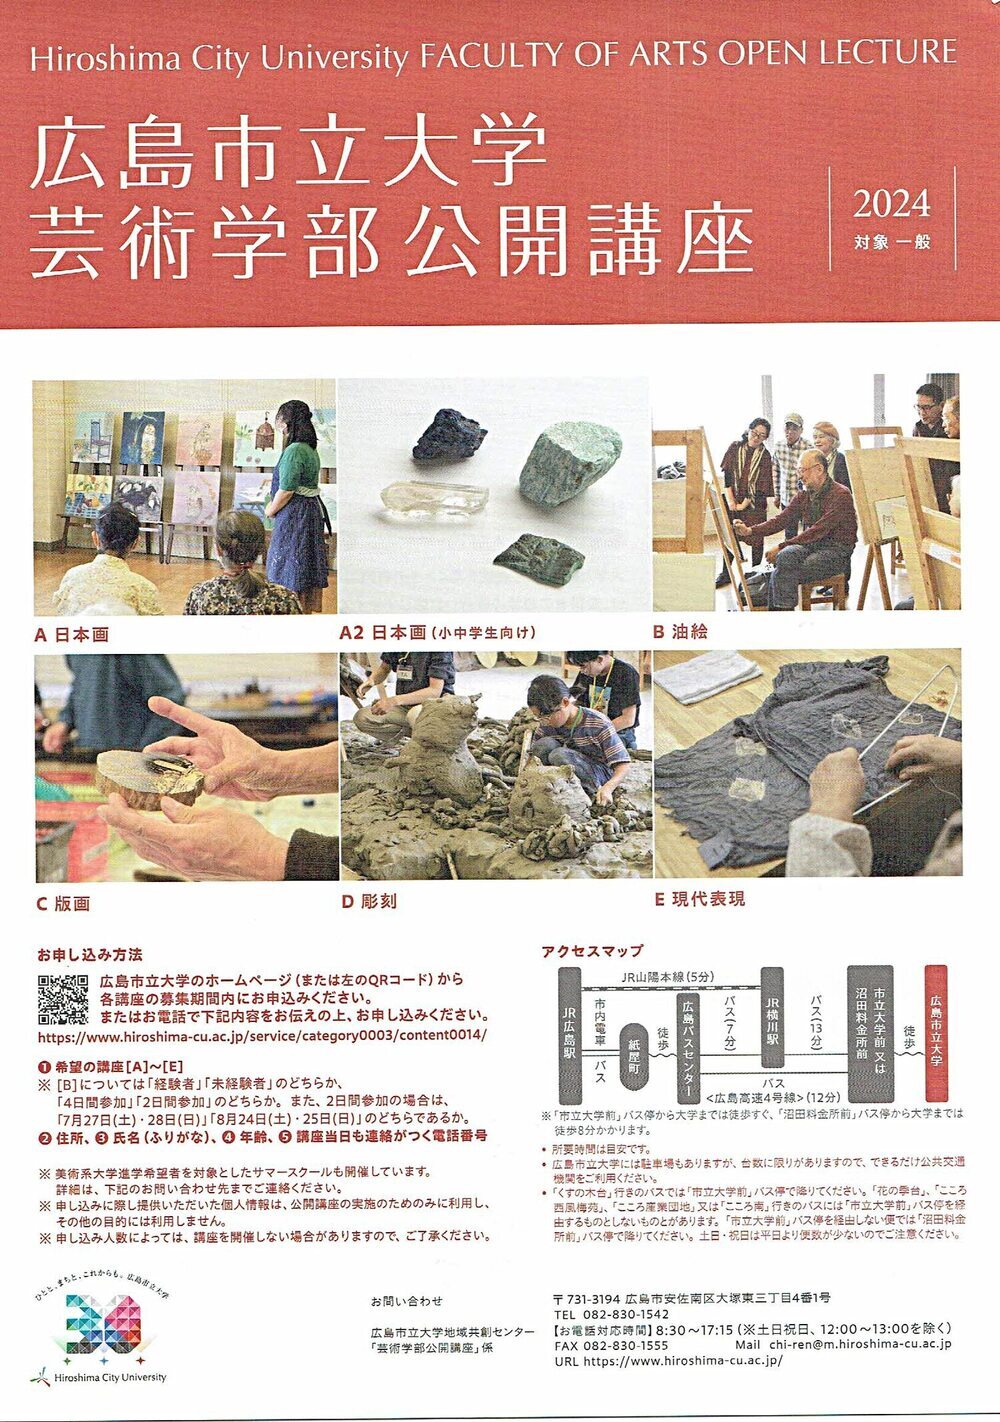 広島市立大学芸術学部公開講座「現代表現」